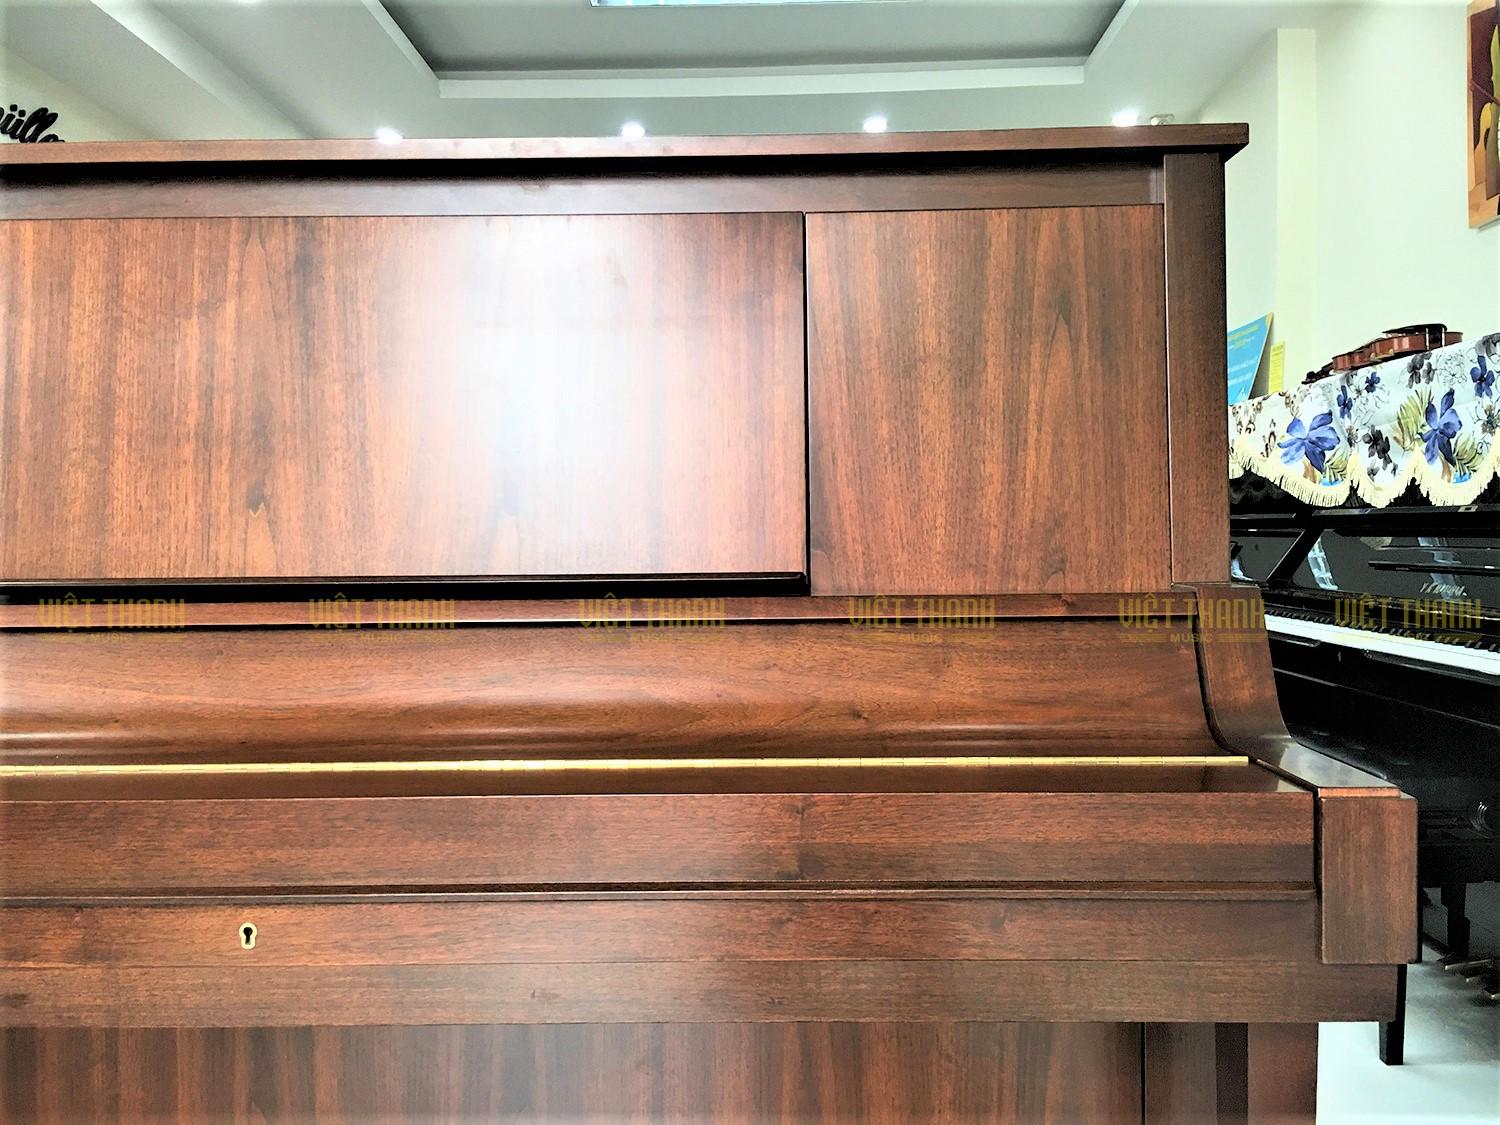 Đàn piano Yamaha W102 có chất liệu gỗ cao cấp